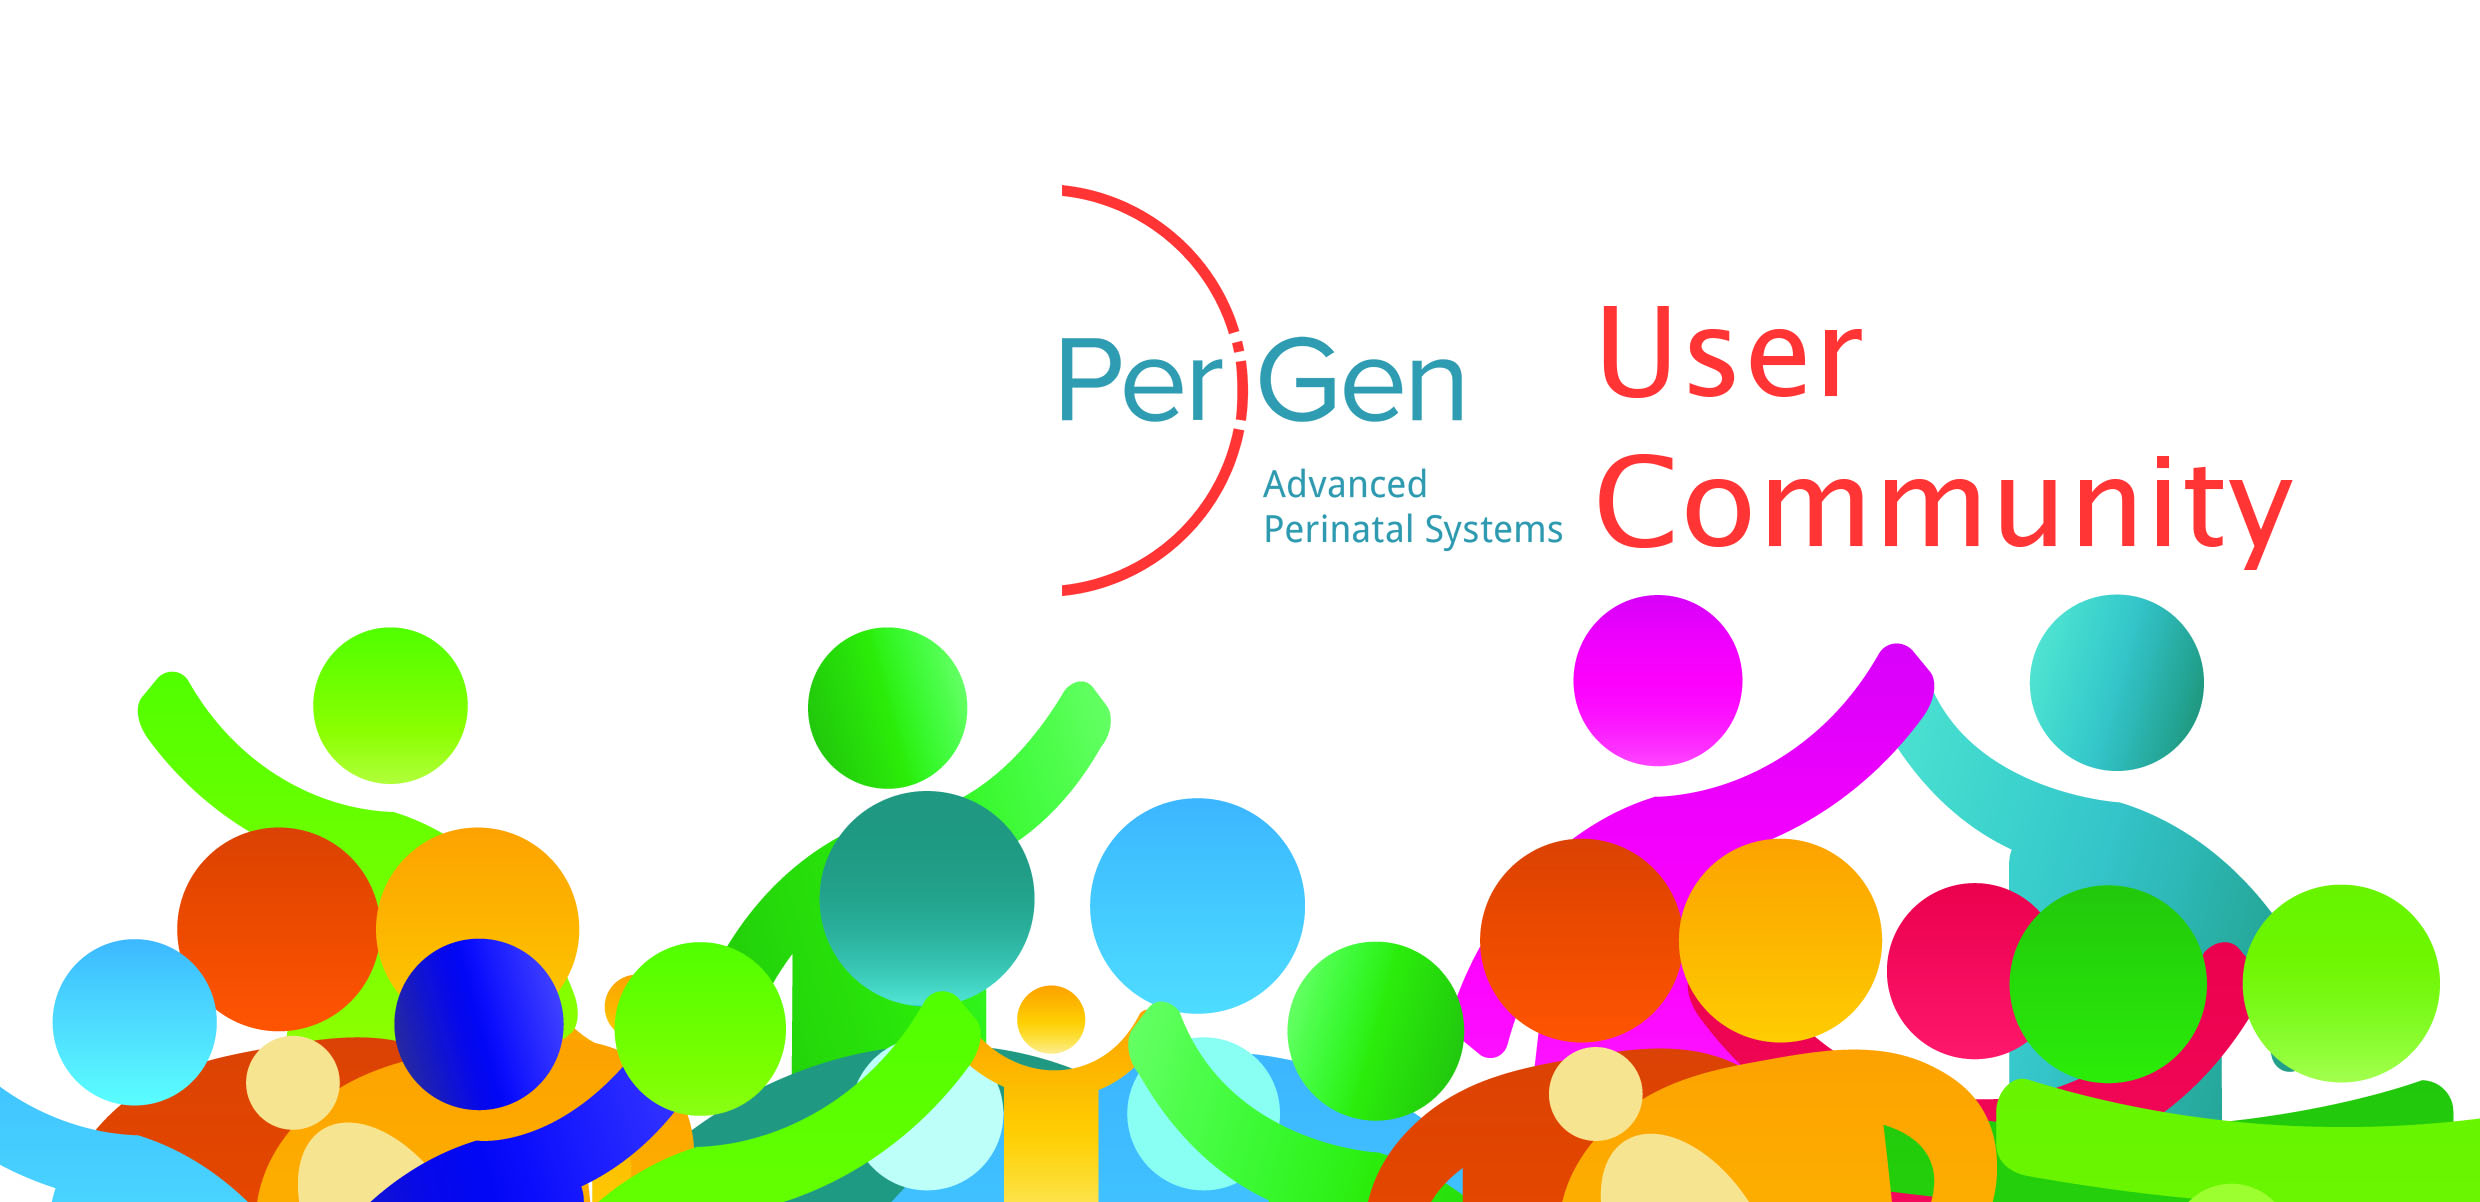 PeriGen User Community